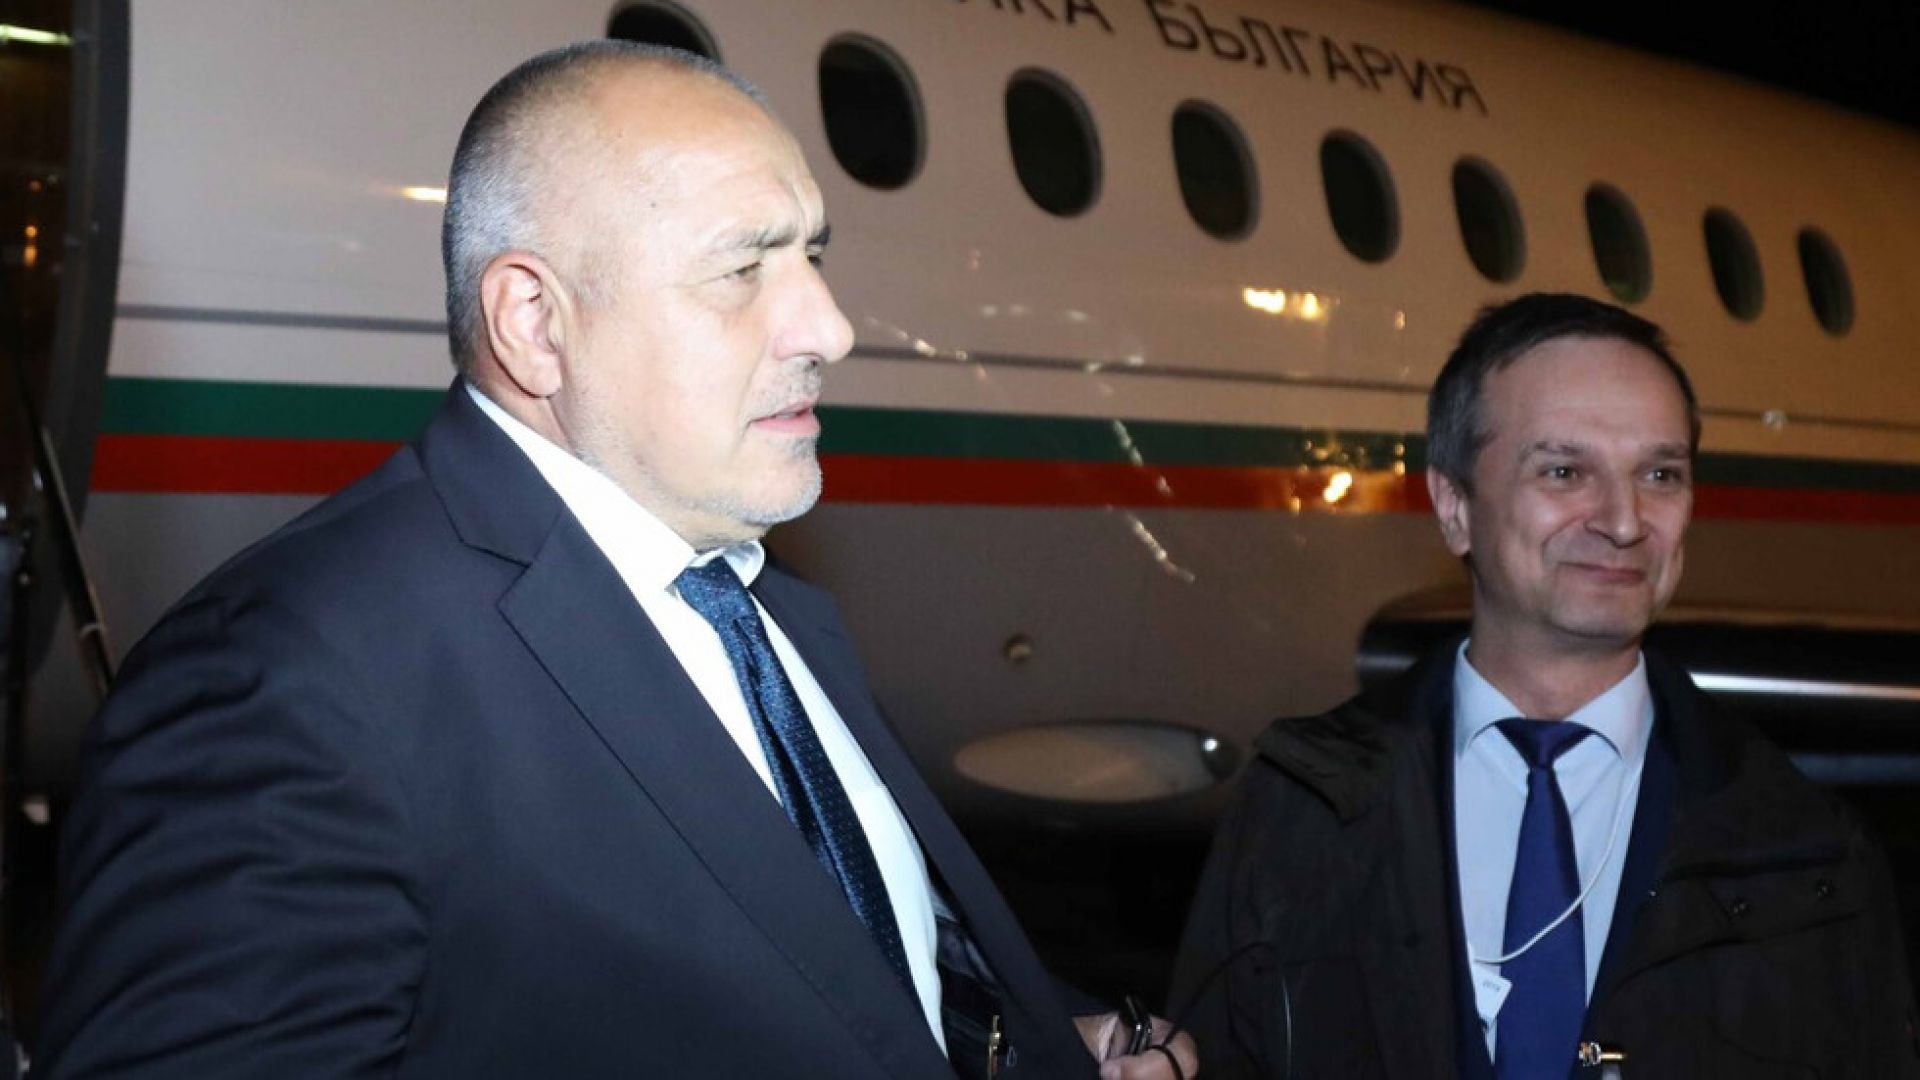 Борисов пристигна в Женева за лидерска среща